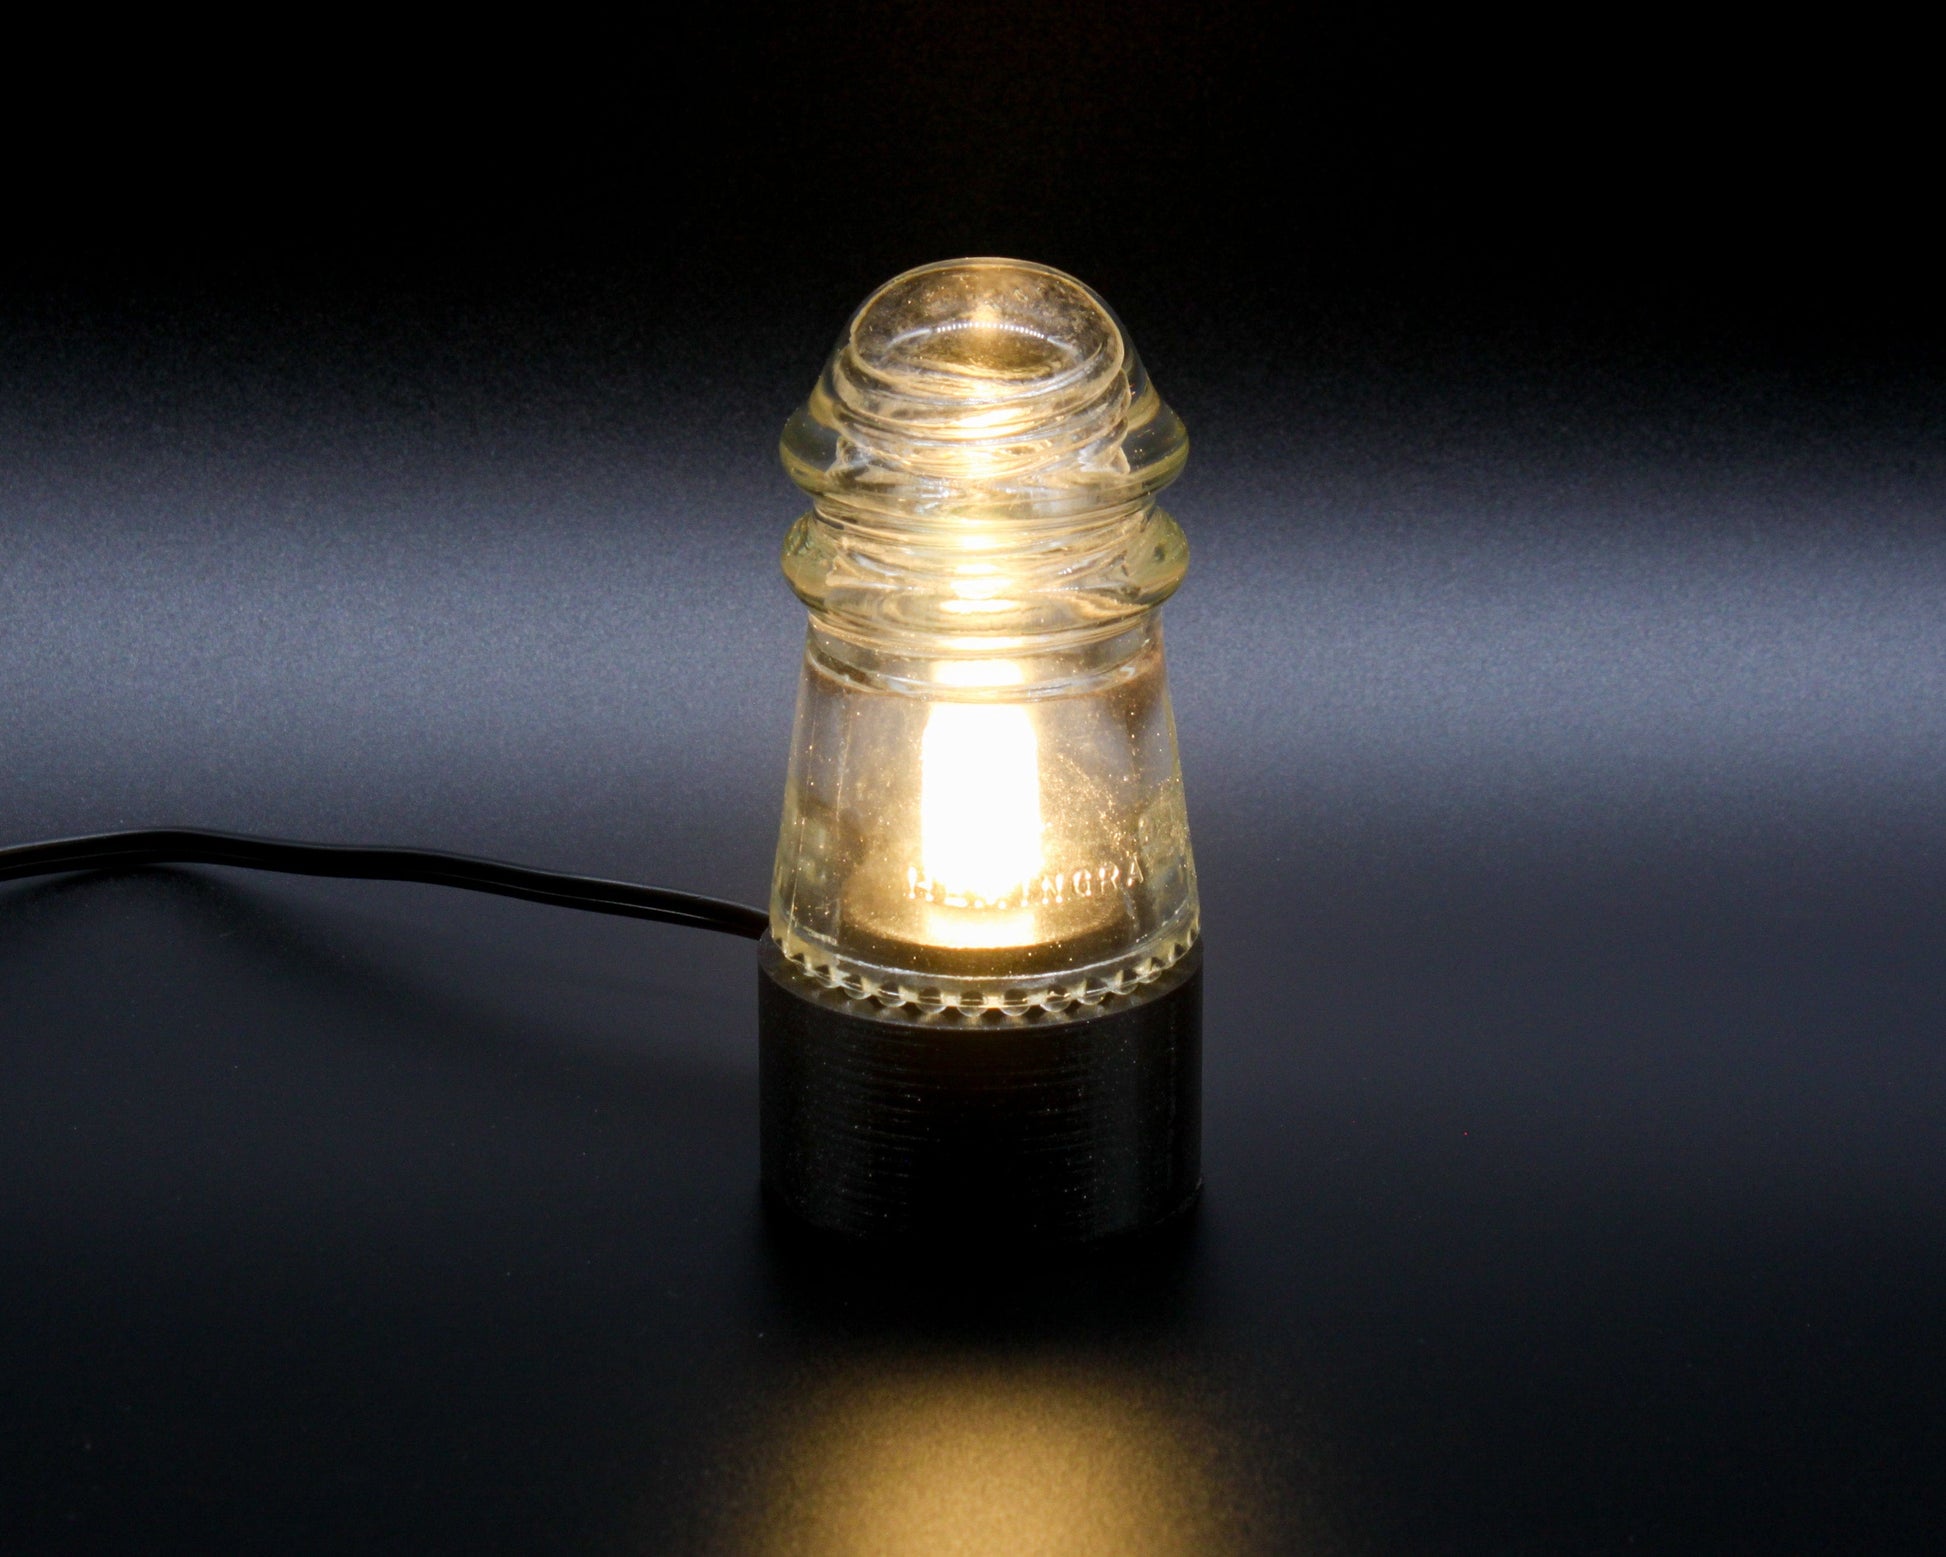 LightAndTimeArt Lamp base Lamp Base for "Hemingray-9, №12" Glass Insulators, Industrial Lighting, Man Cave Decor